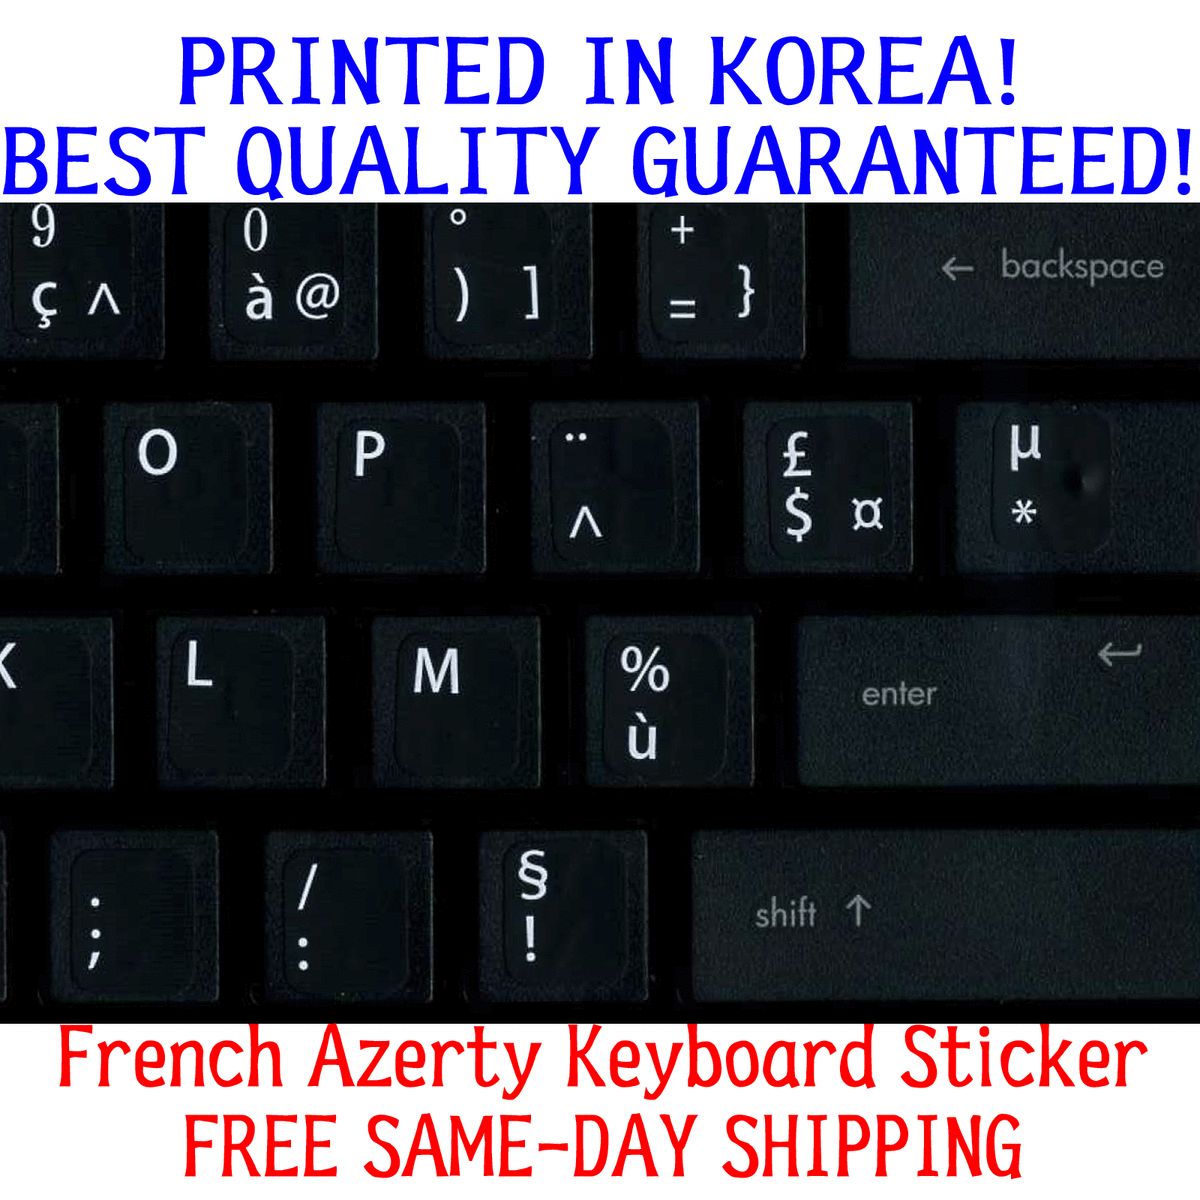 French Keyboard Sticker for Azerty Keyboard